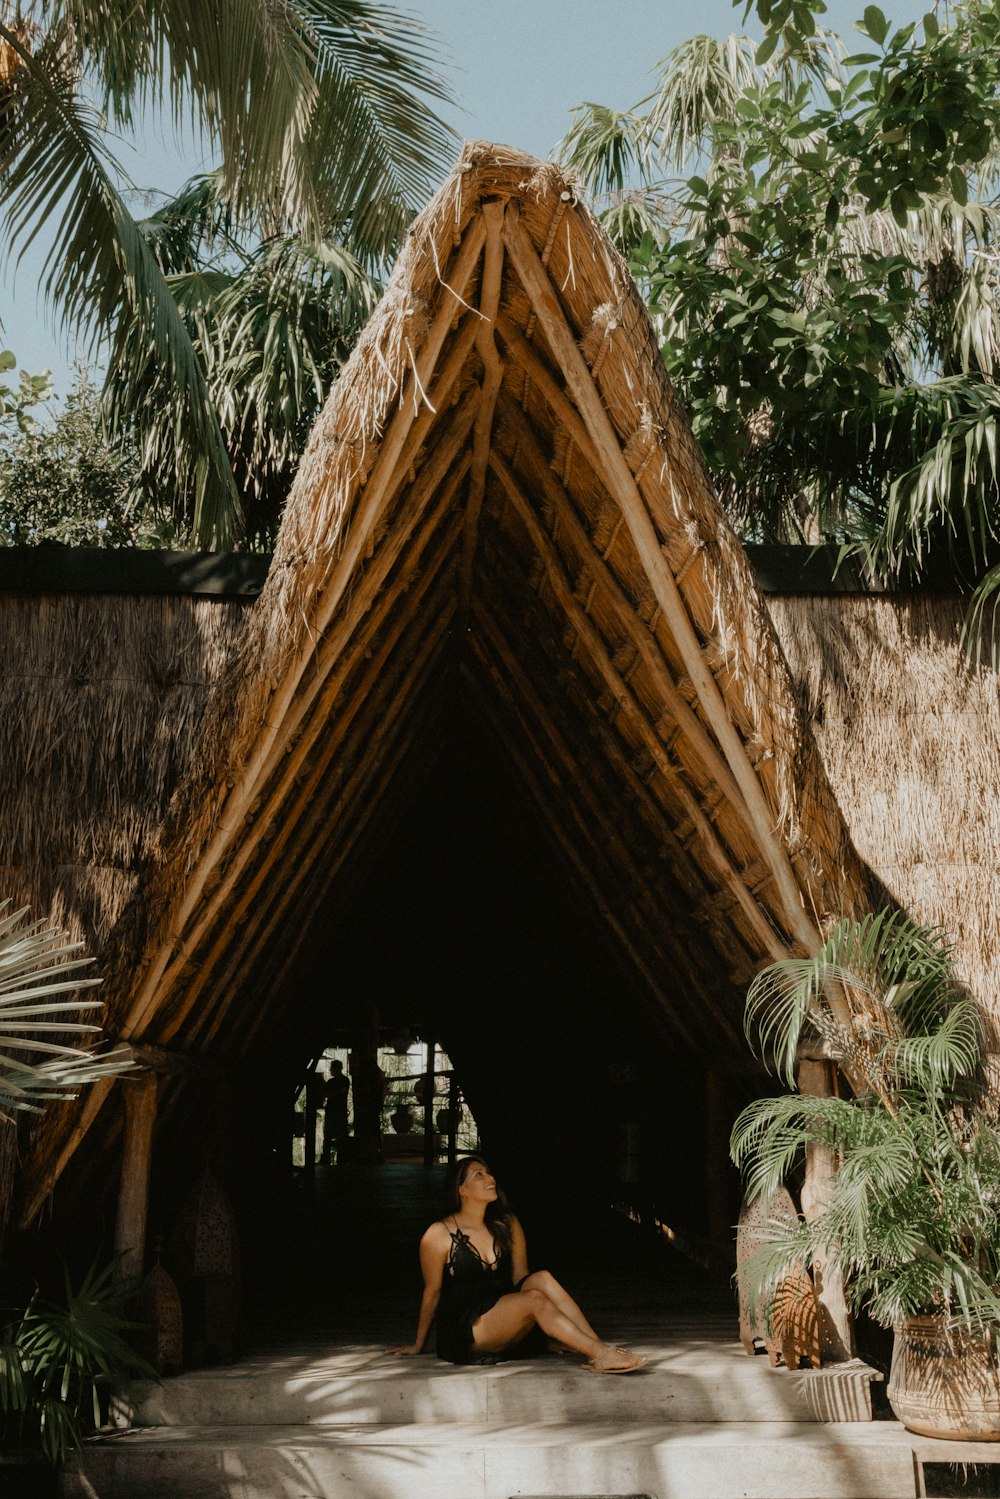 Casa de madera marrón cerca de una palmera verde durante el día